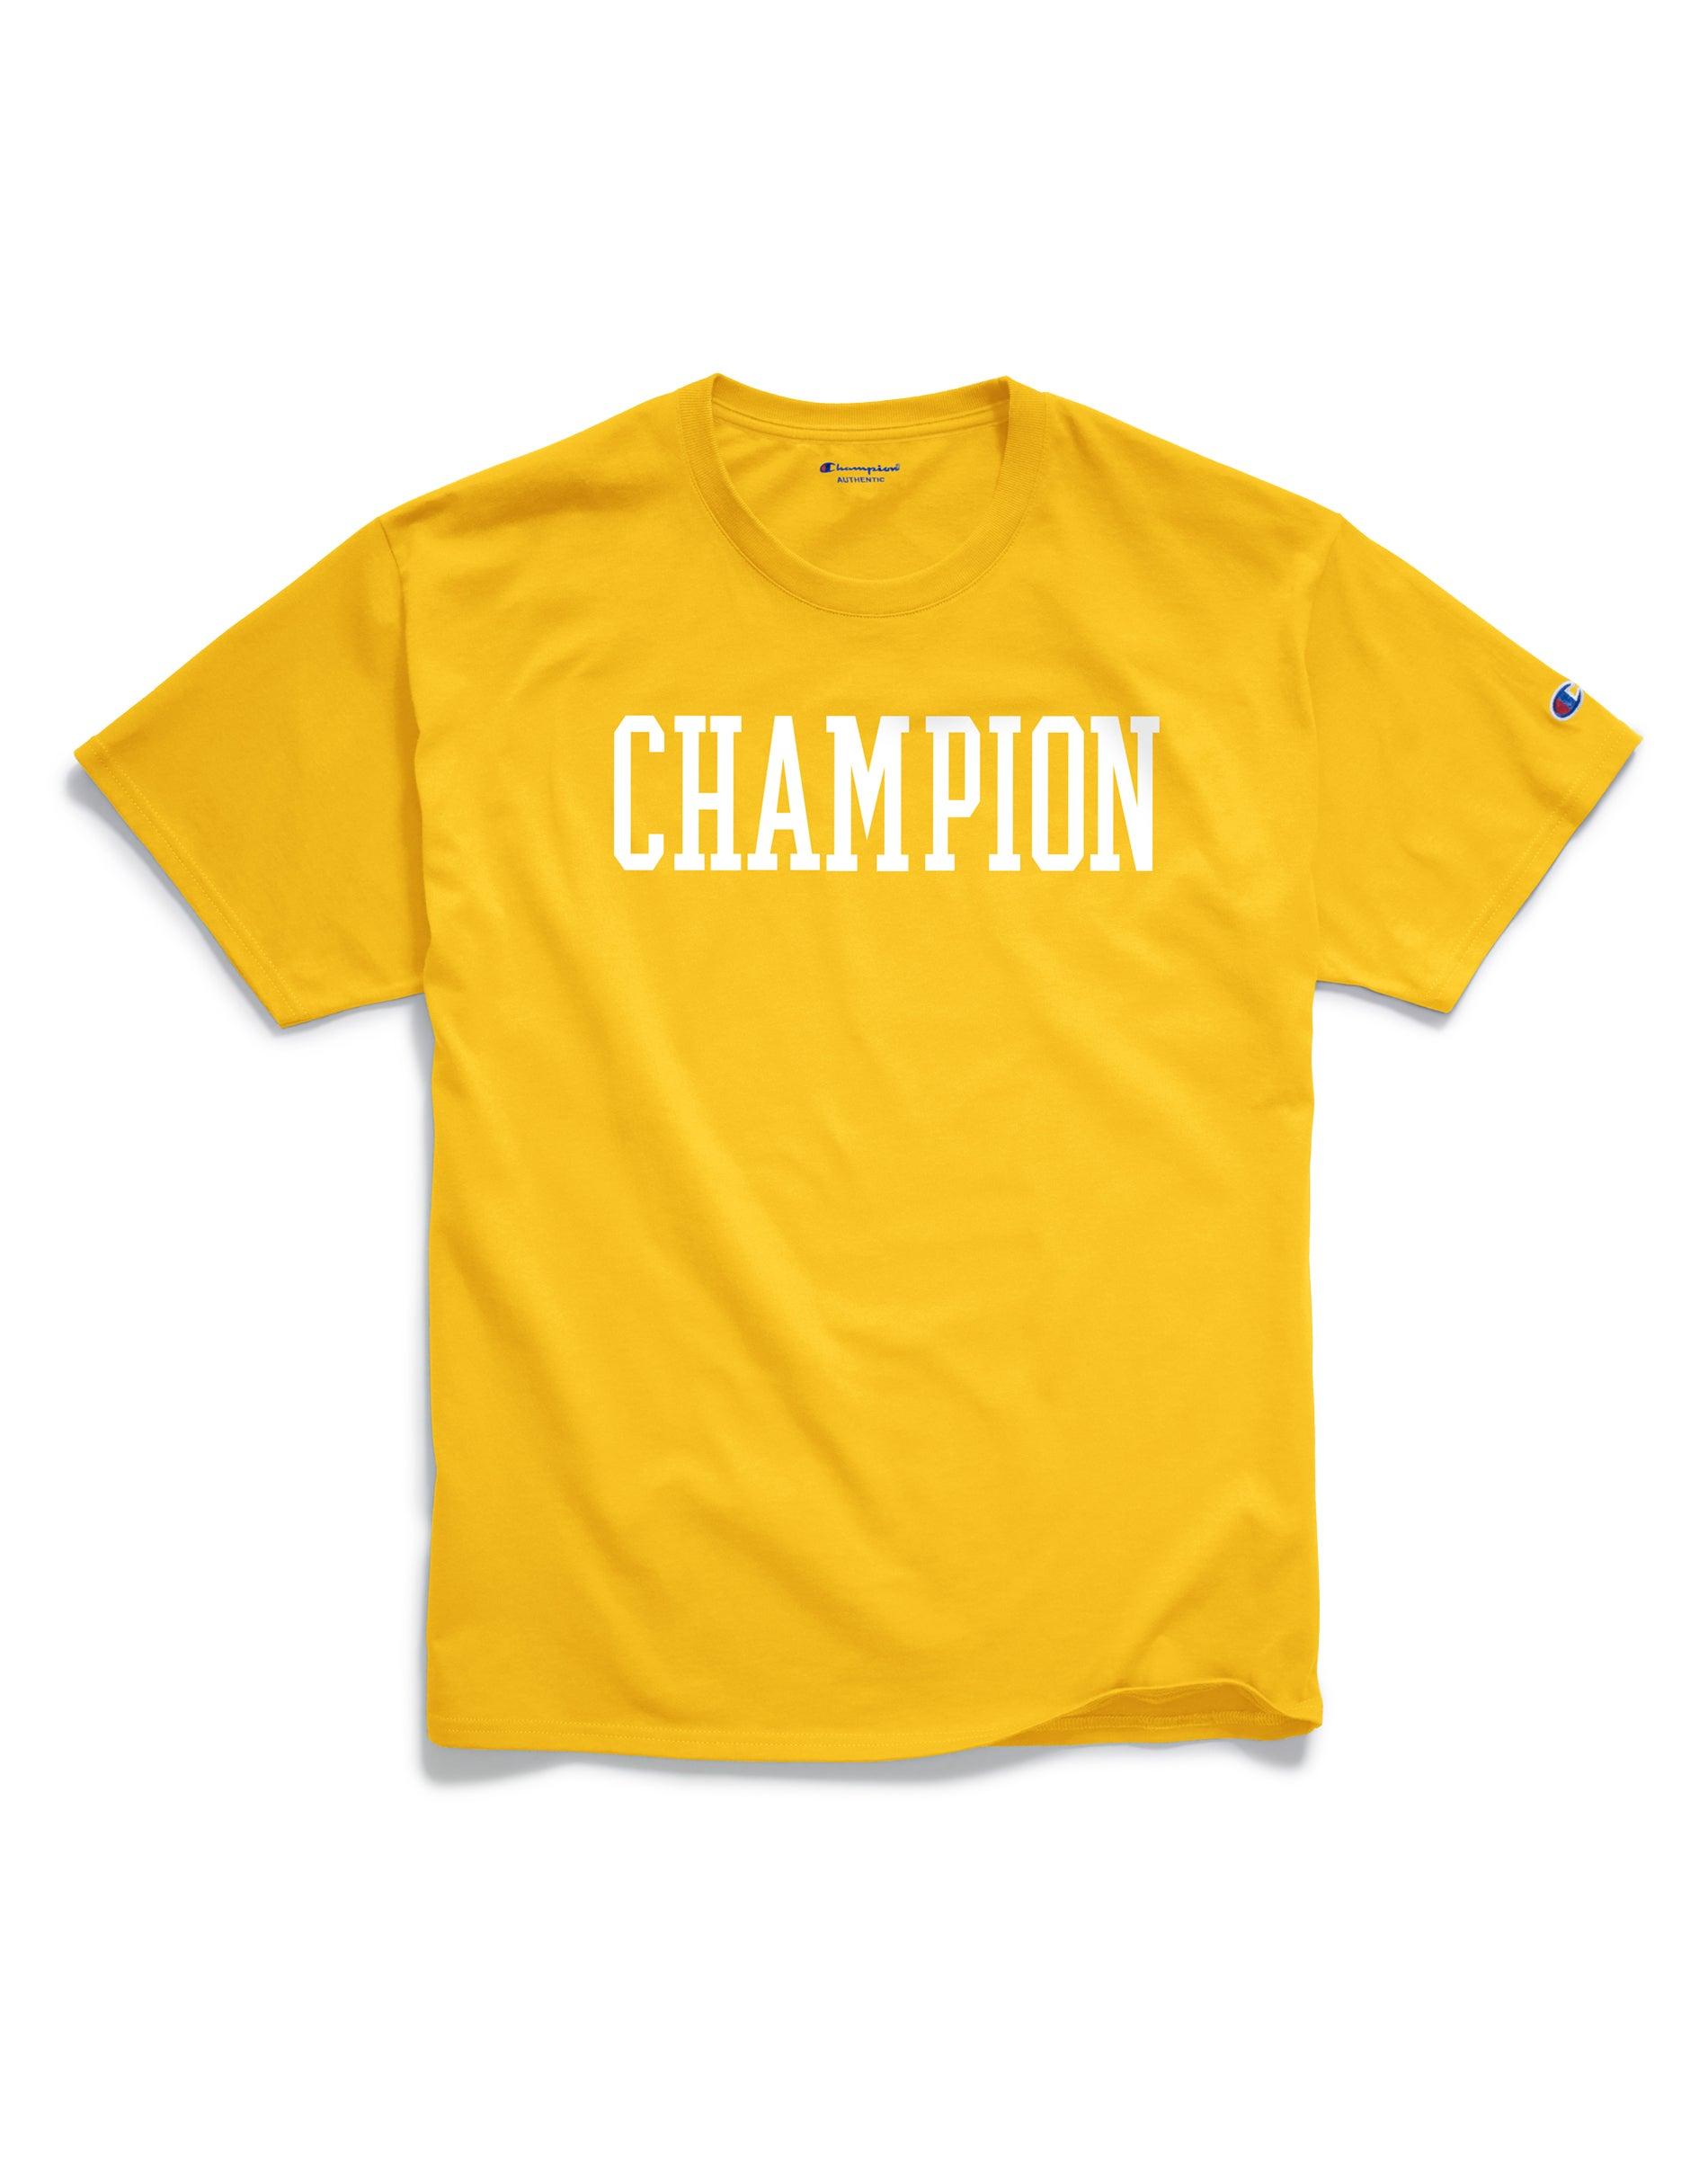 champion yellow jersey